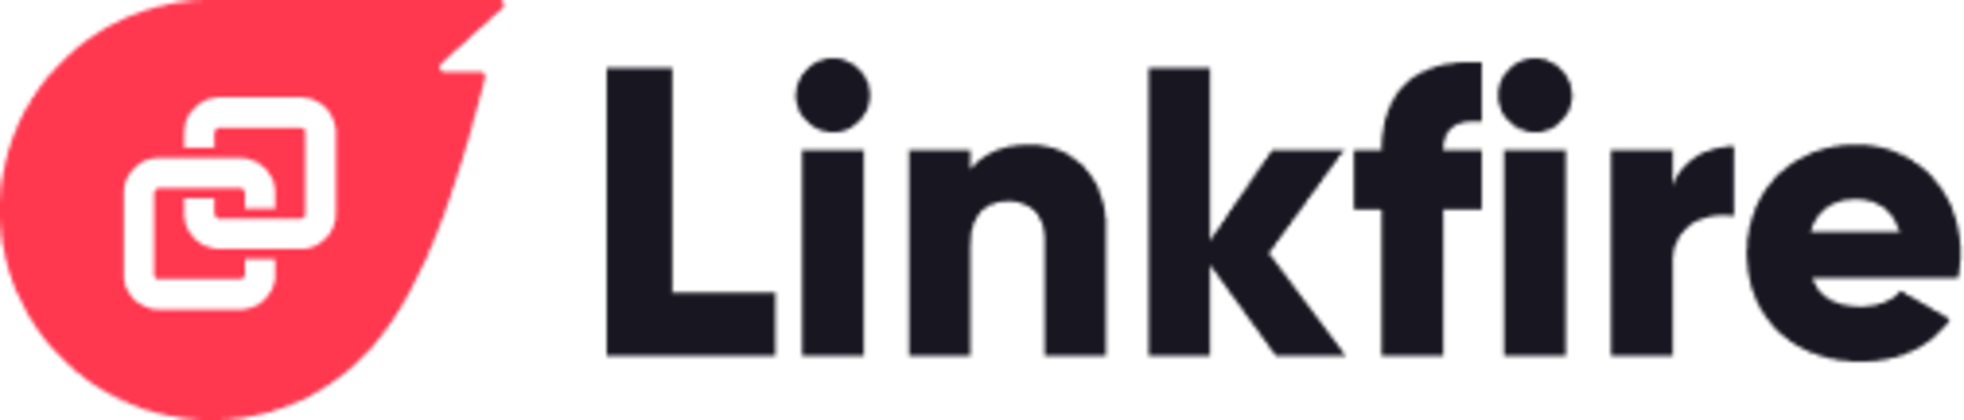 linkfire-logo